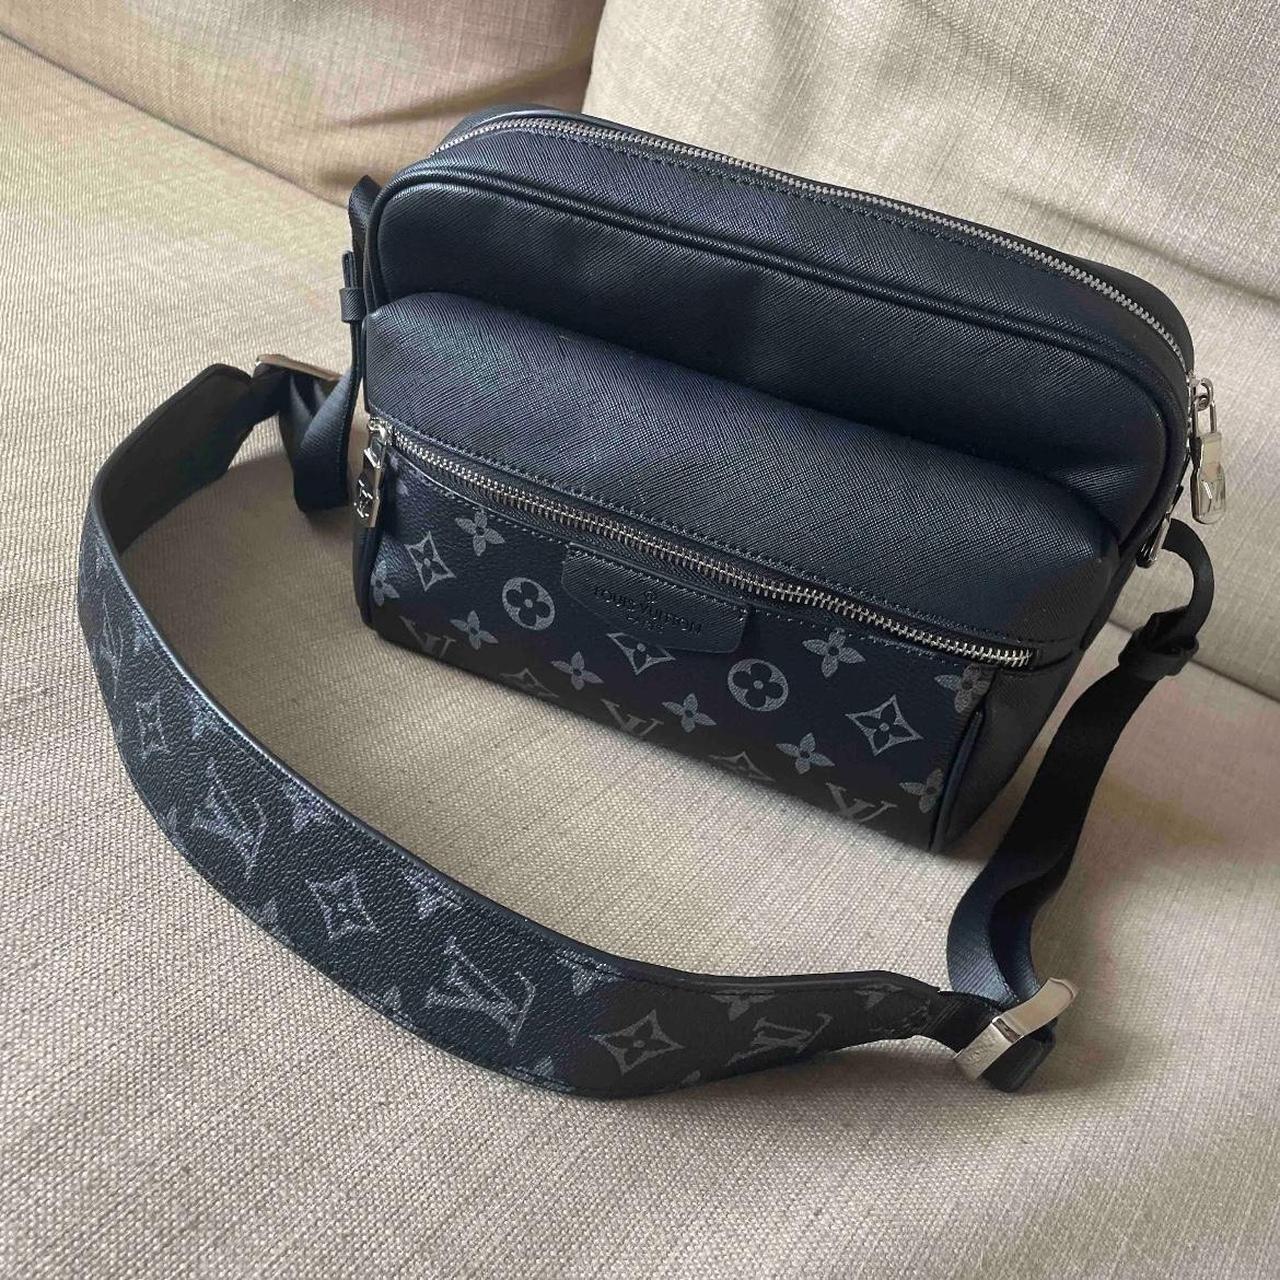 Louis Vuitton outdoor Messenger bag, Brand new... - Depop